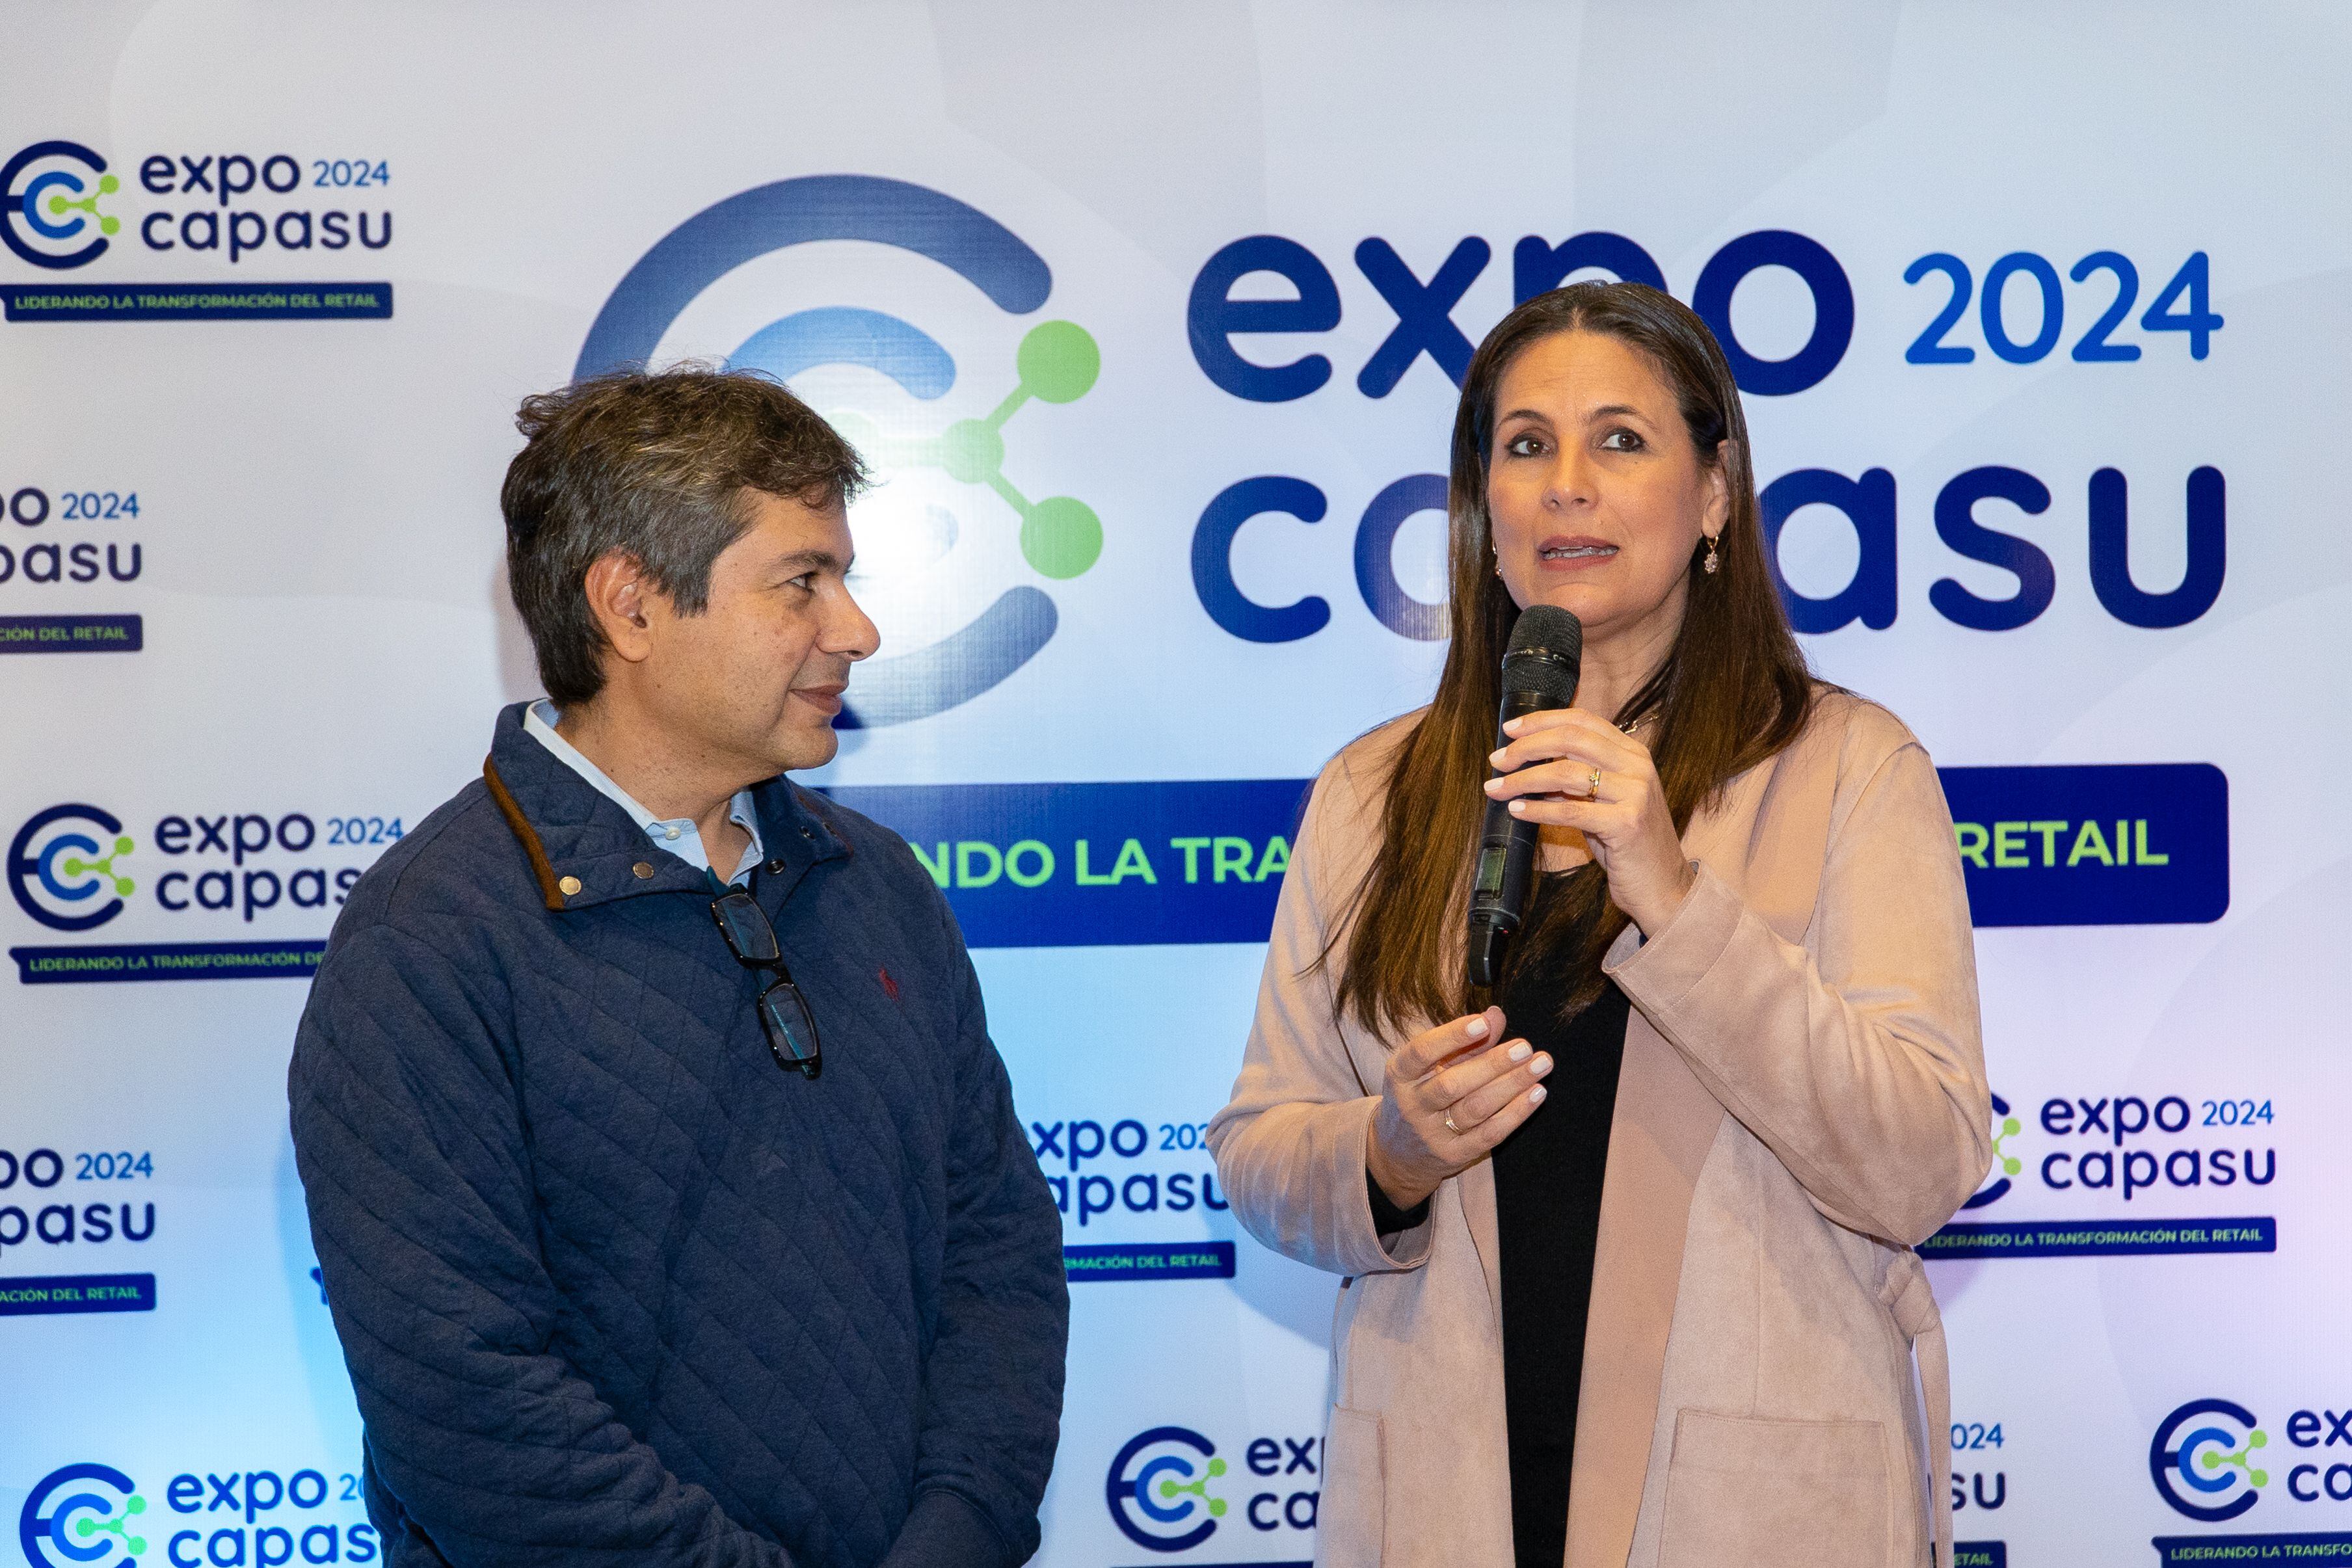 El presidente de Capasu, Joaquín González, junto a la viceministra de Industria, Lorena Mendez, durante el lanzamiento de la Expo Capasu 2024.